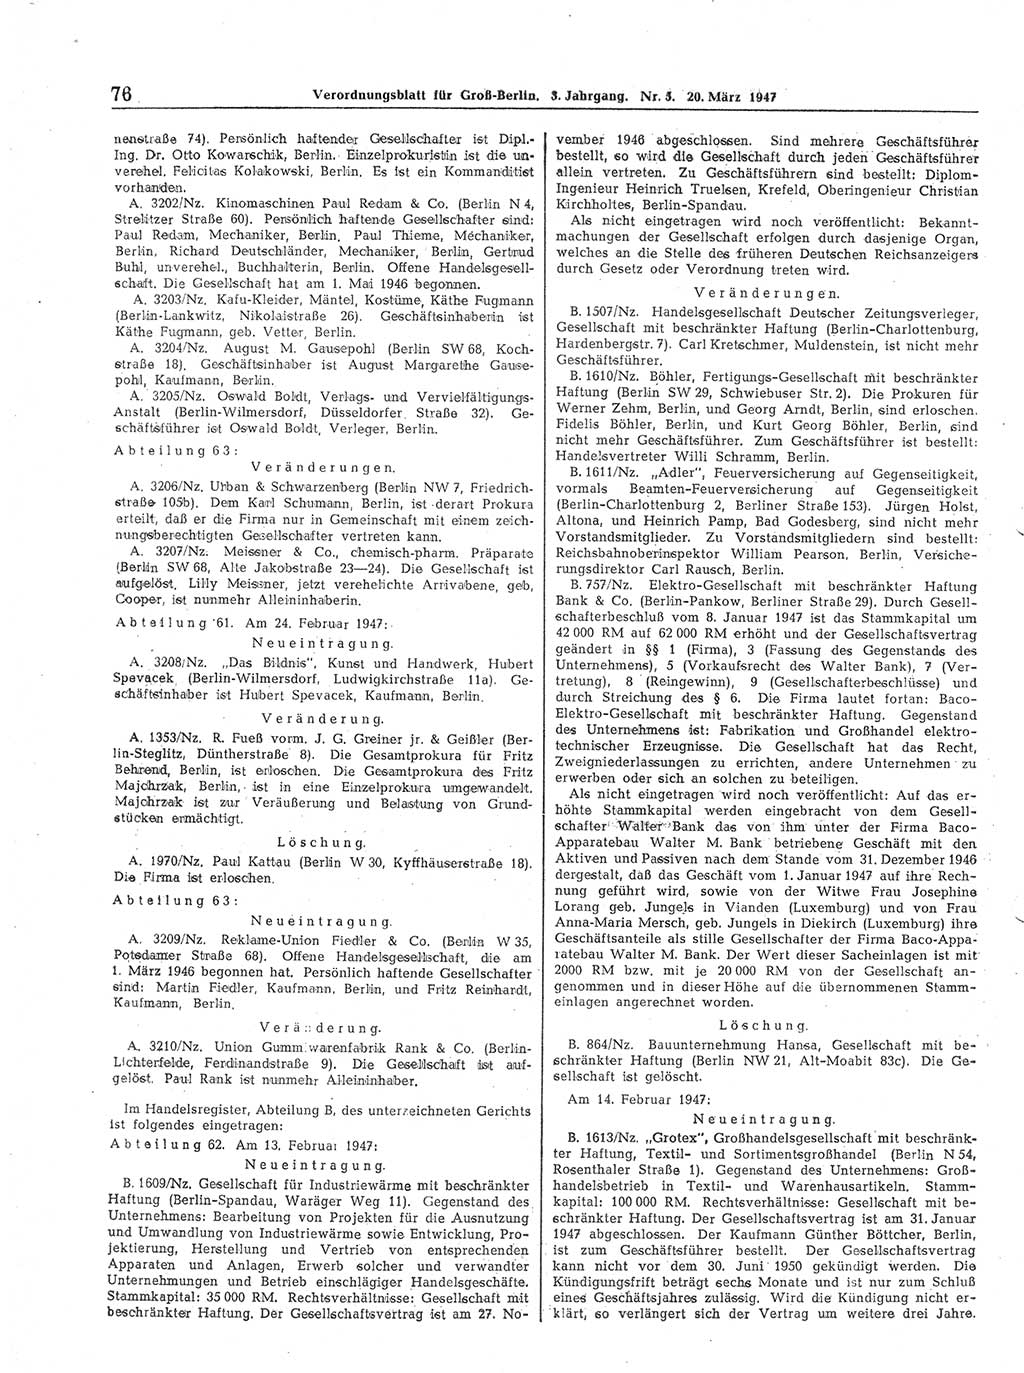 Verordnungsblatt (VOBl.) für Groß-Berlin 1947, Seite 76 (VOBl. Bln. 1947, S. 76)